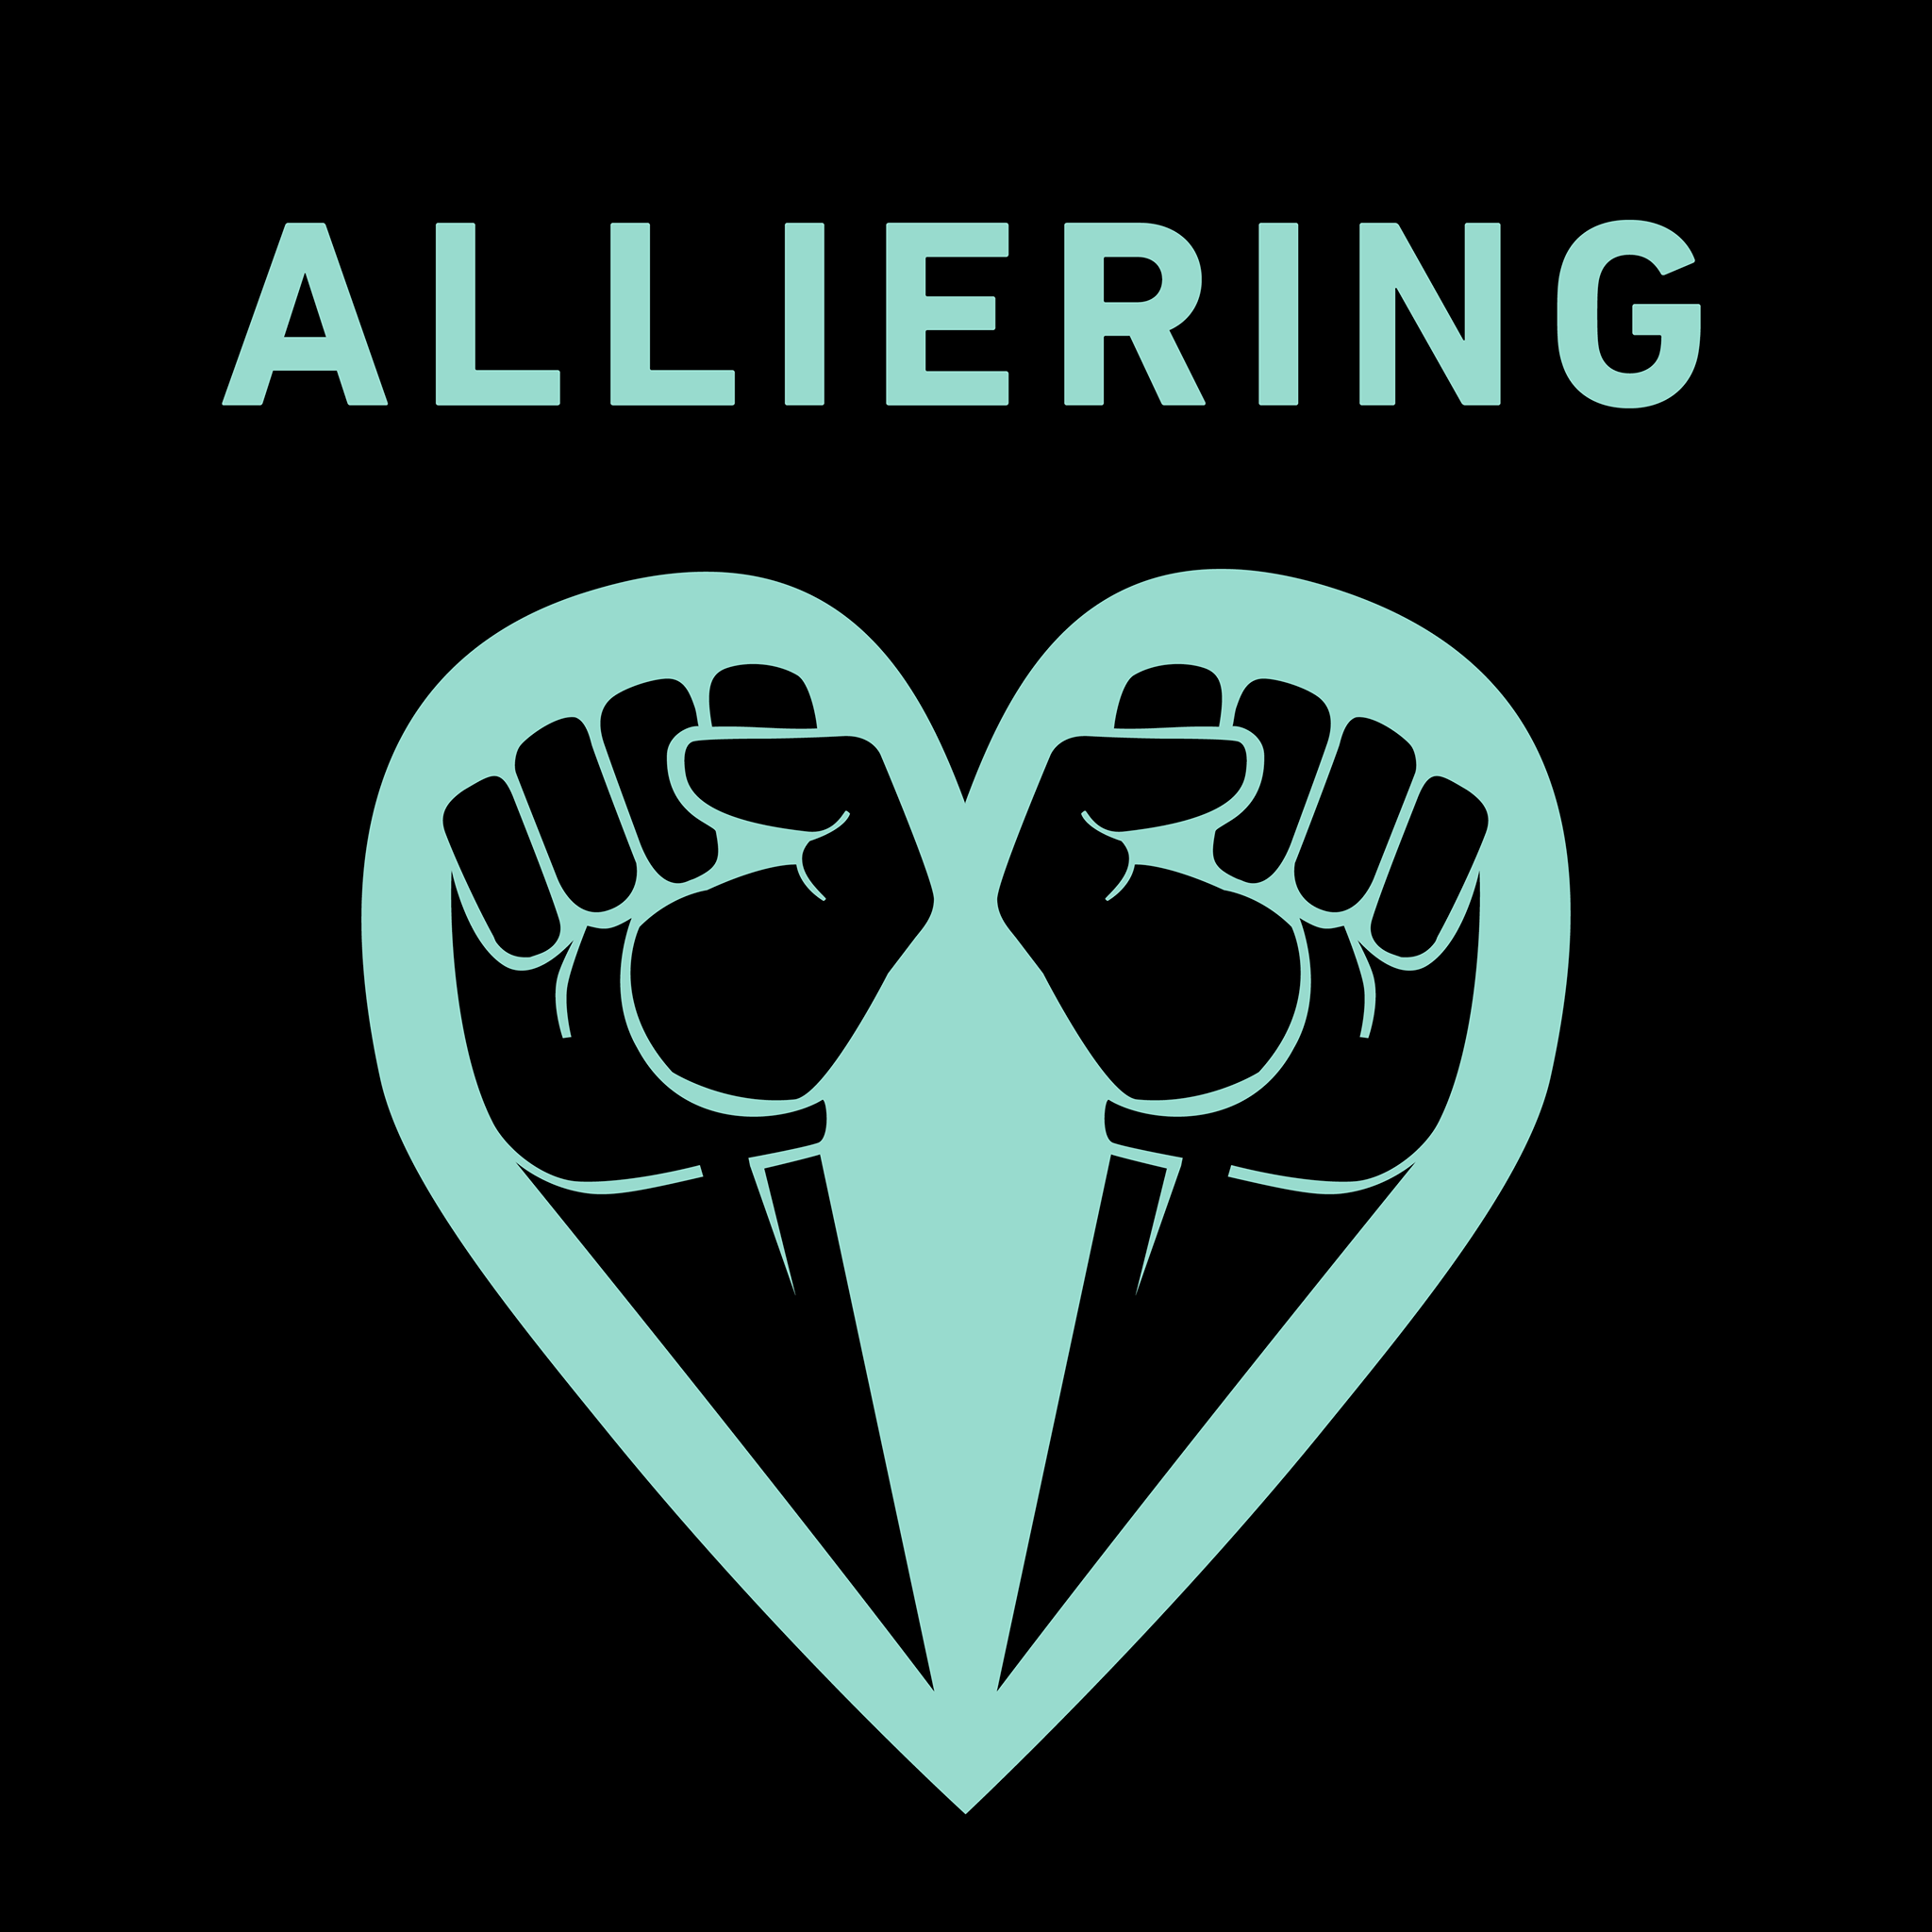 Formgiven bild med texten “Alliering” samt projekt #Allierads logotyp i form av två knutna nävar formade till ett hjärta.